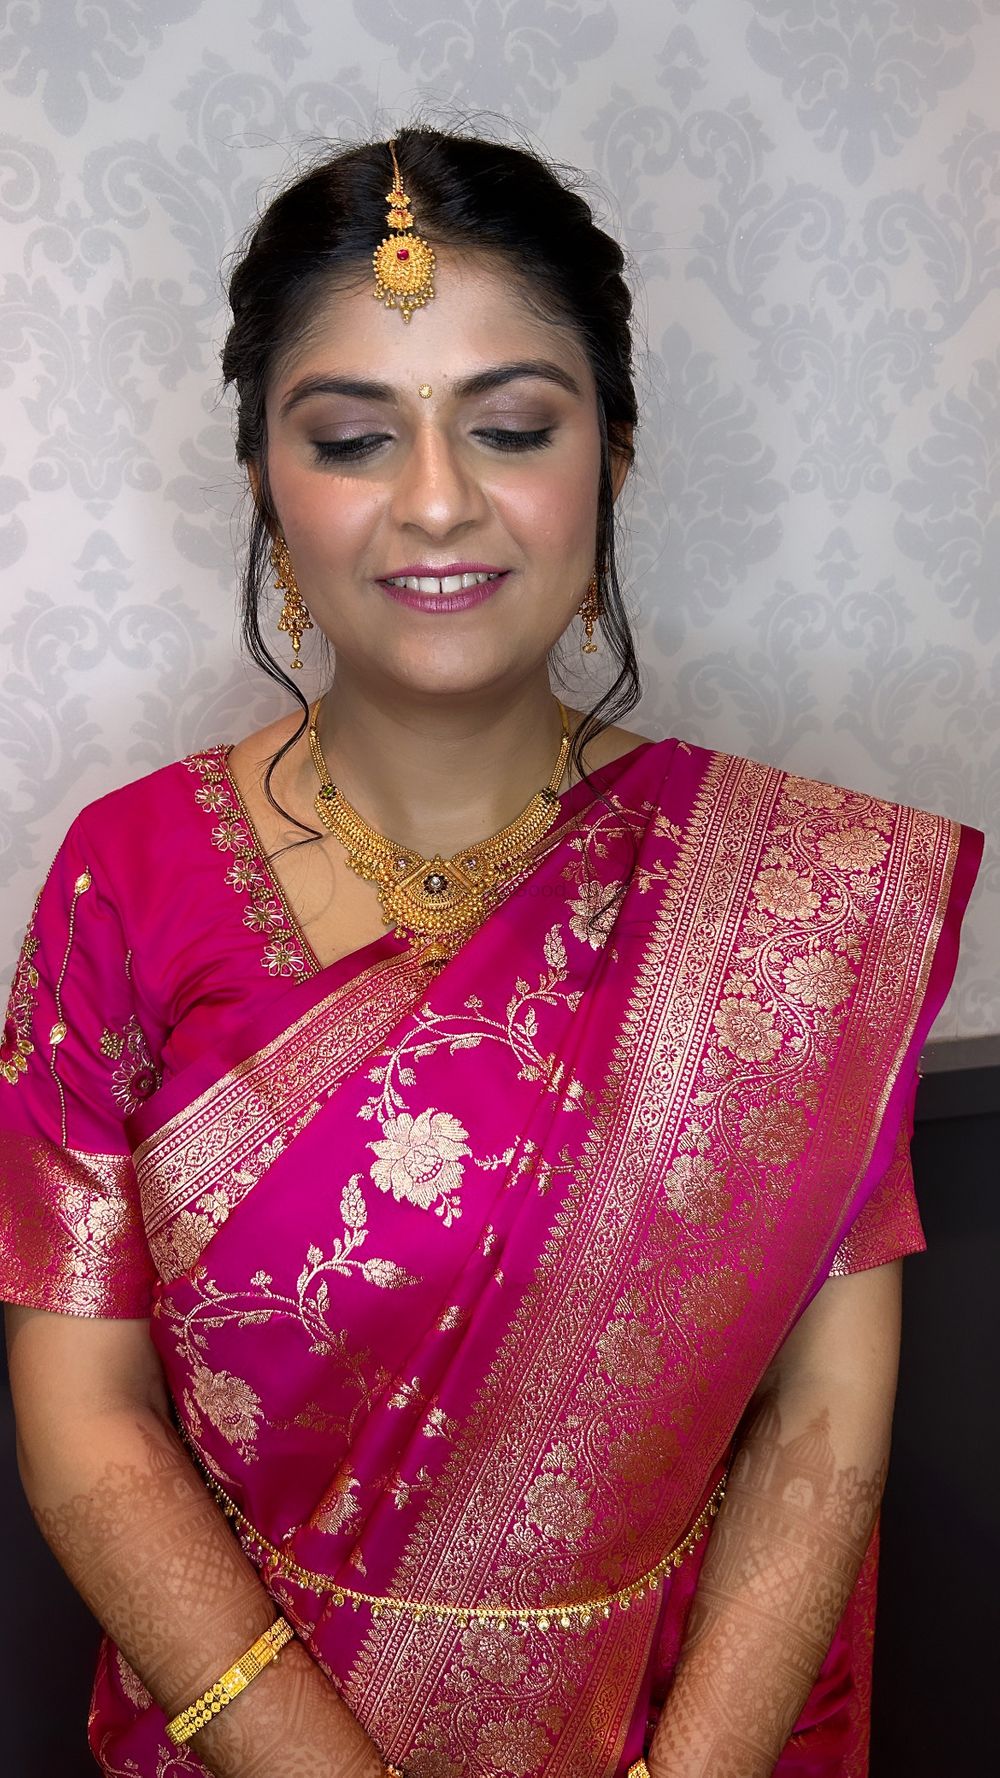 Photo From Maharashtrian Bride - By bridesbyjacqueline